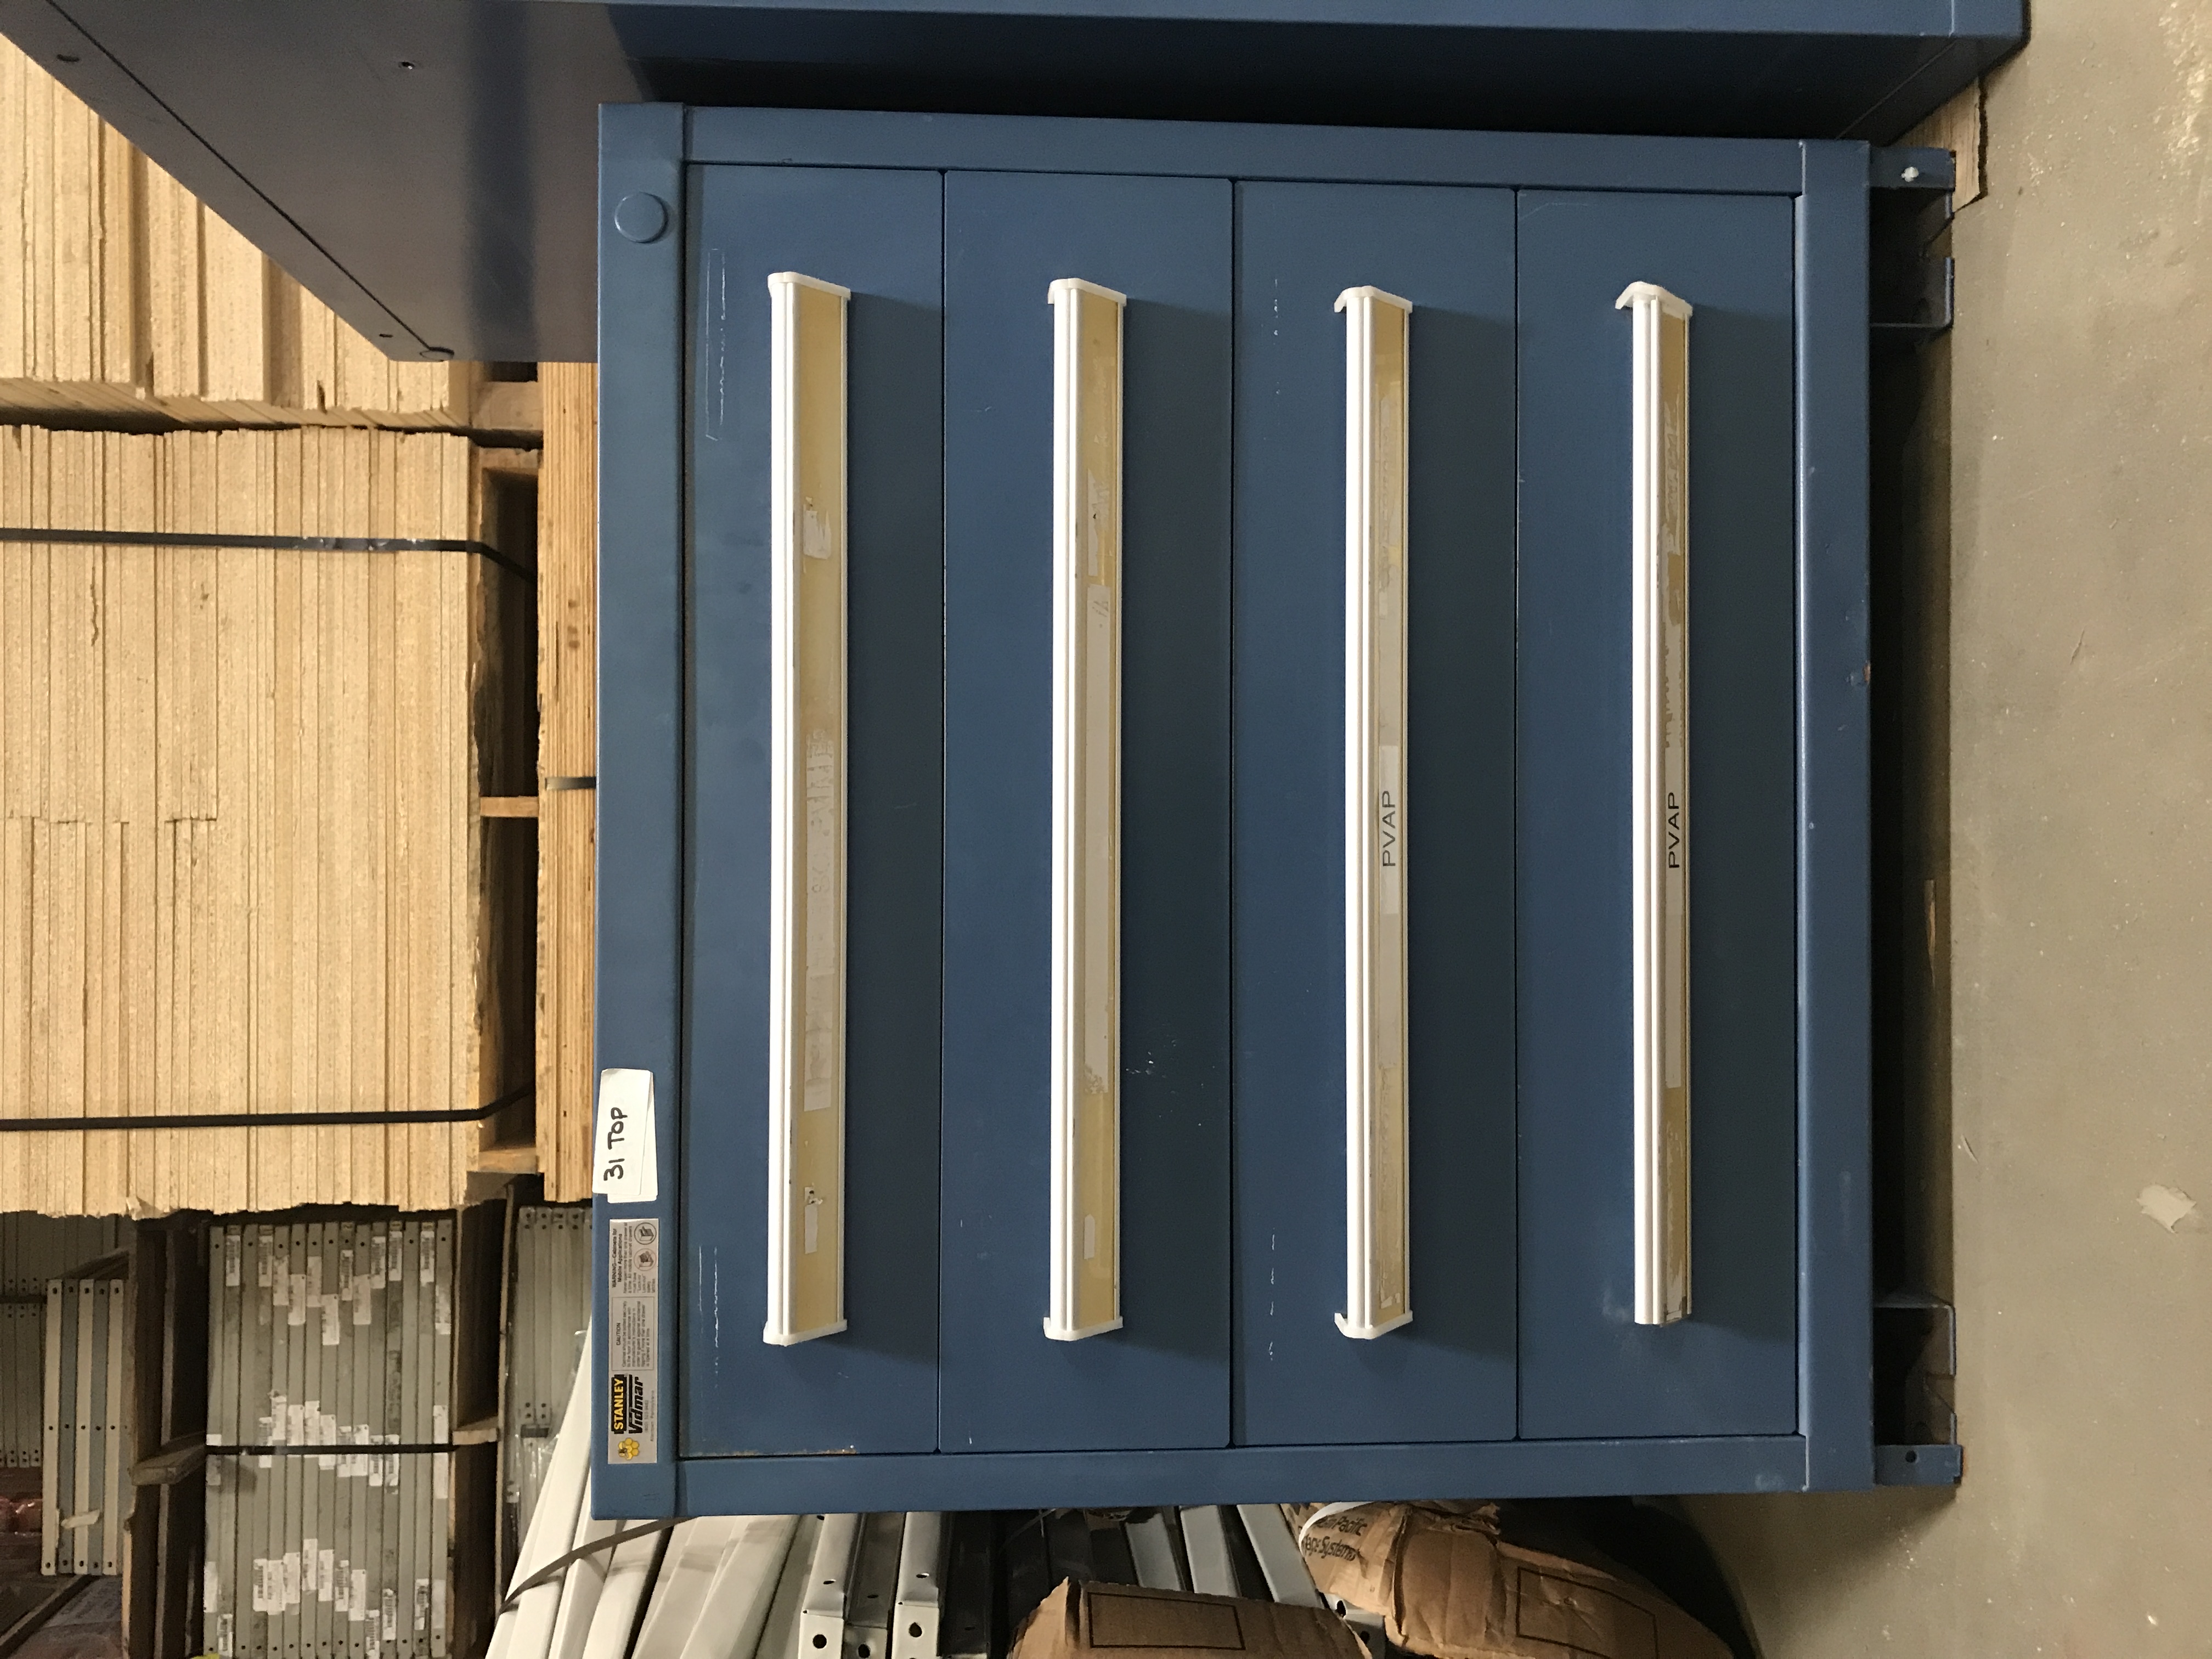 4-drawer modular cabinet